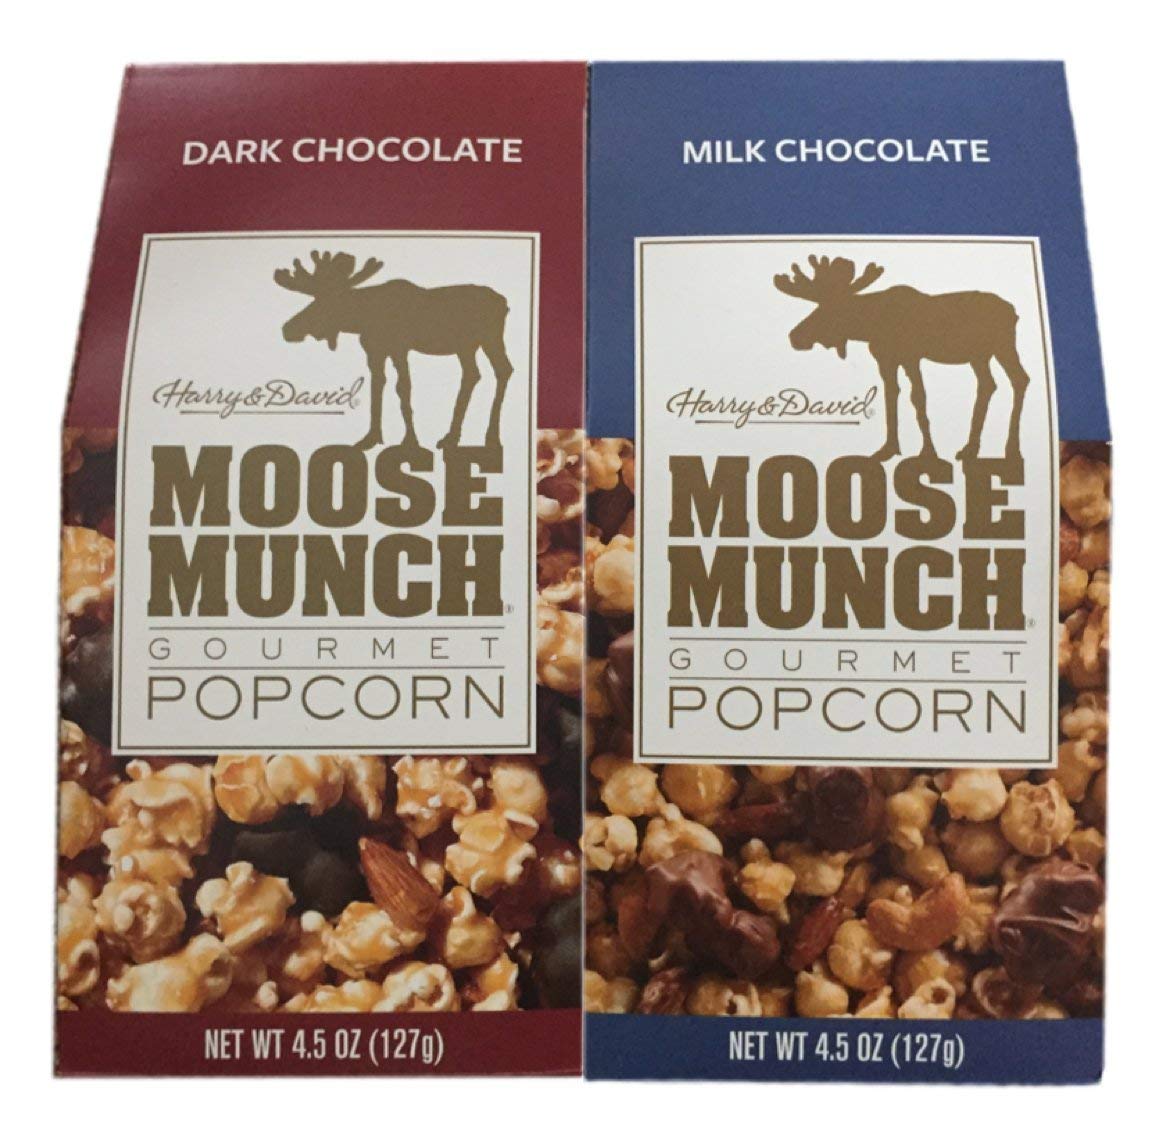 https://storage.googleapis.com/loveable.appspot.com/blog/uploads/2023/05/20025227/Moose-Munch-Gourmet-Popcorn.jpg